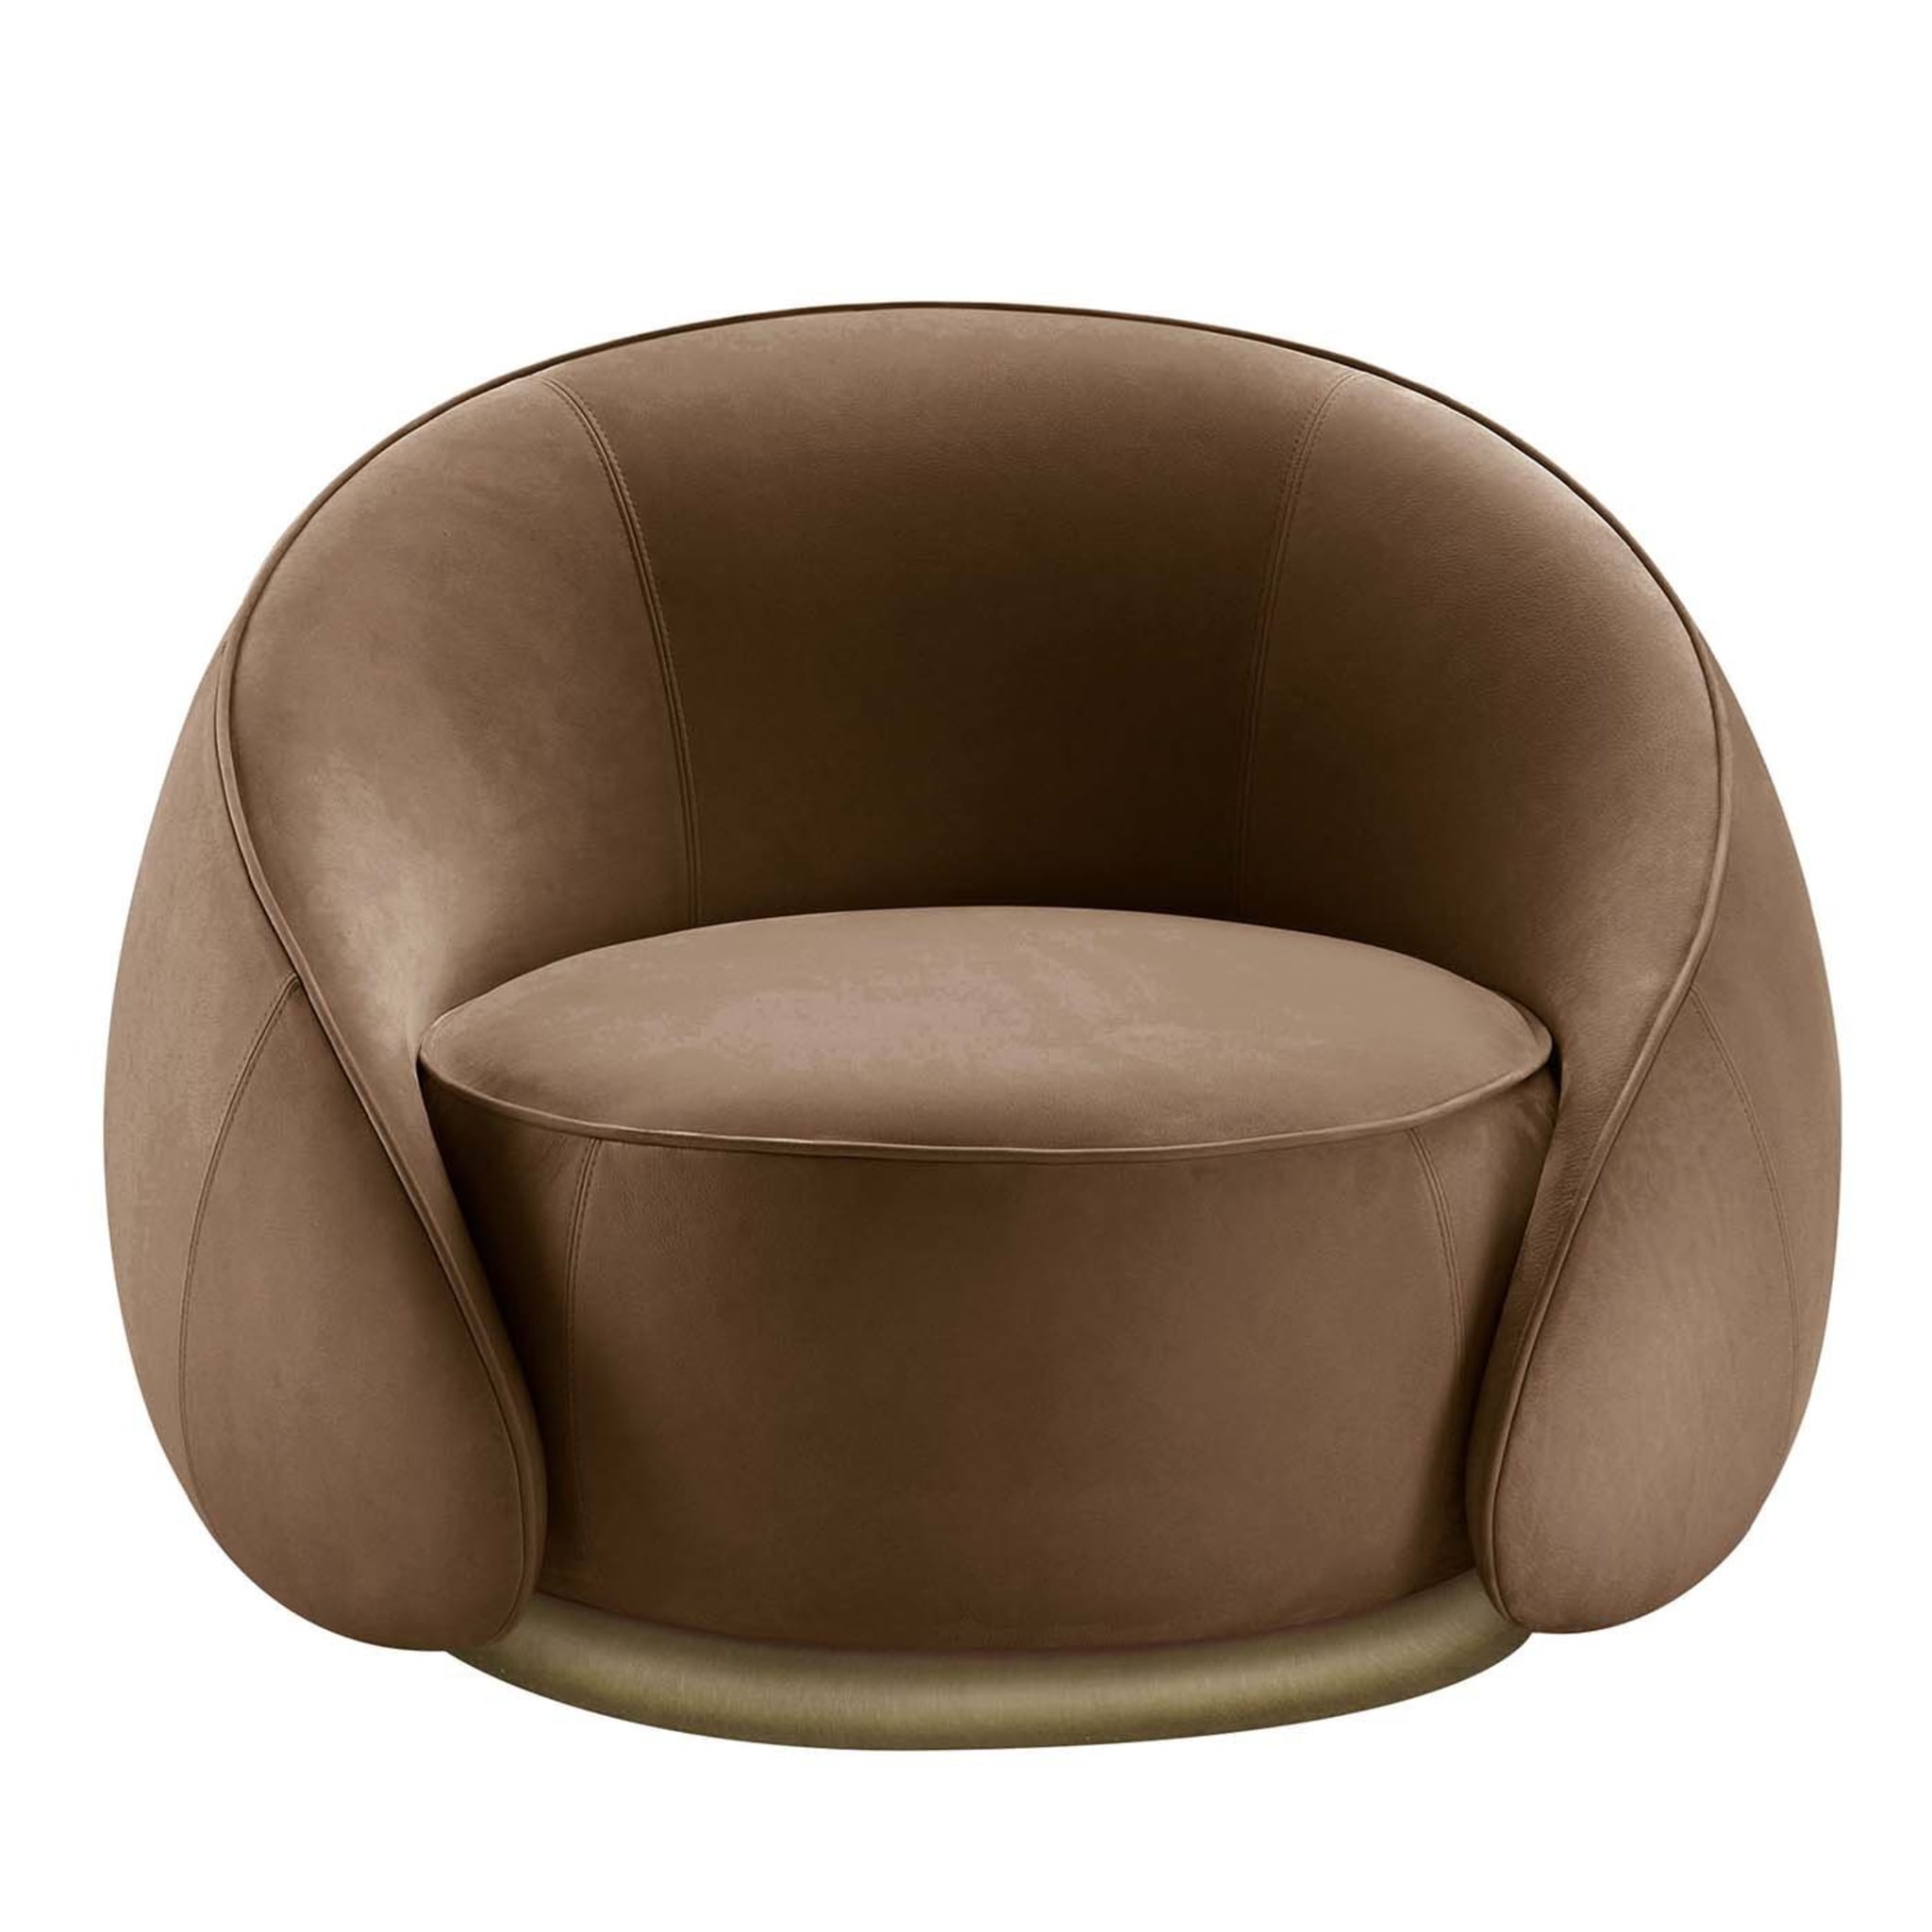 Abbracci Brown Armchair - Main view